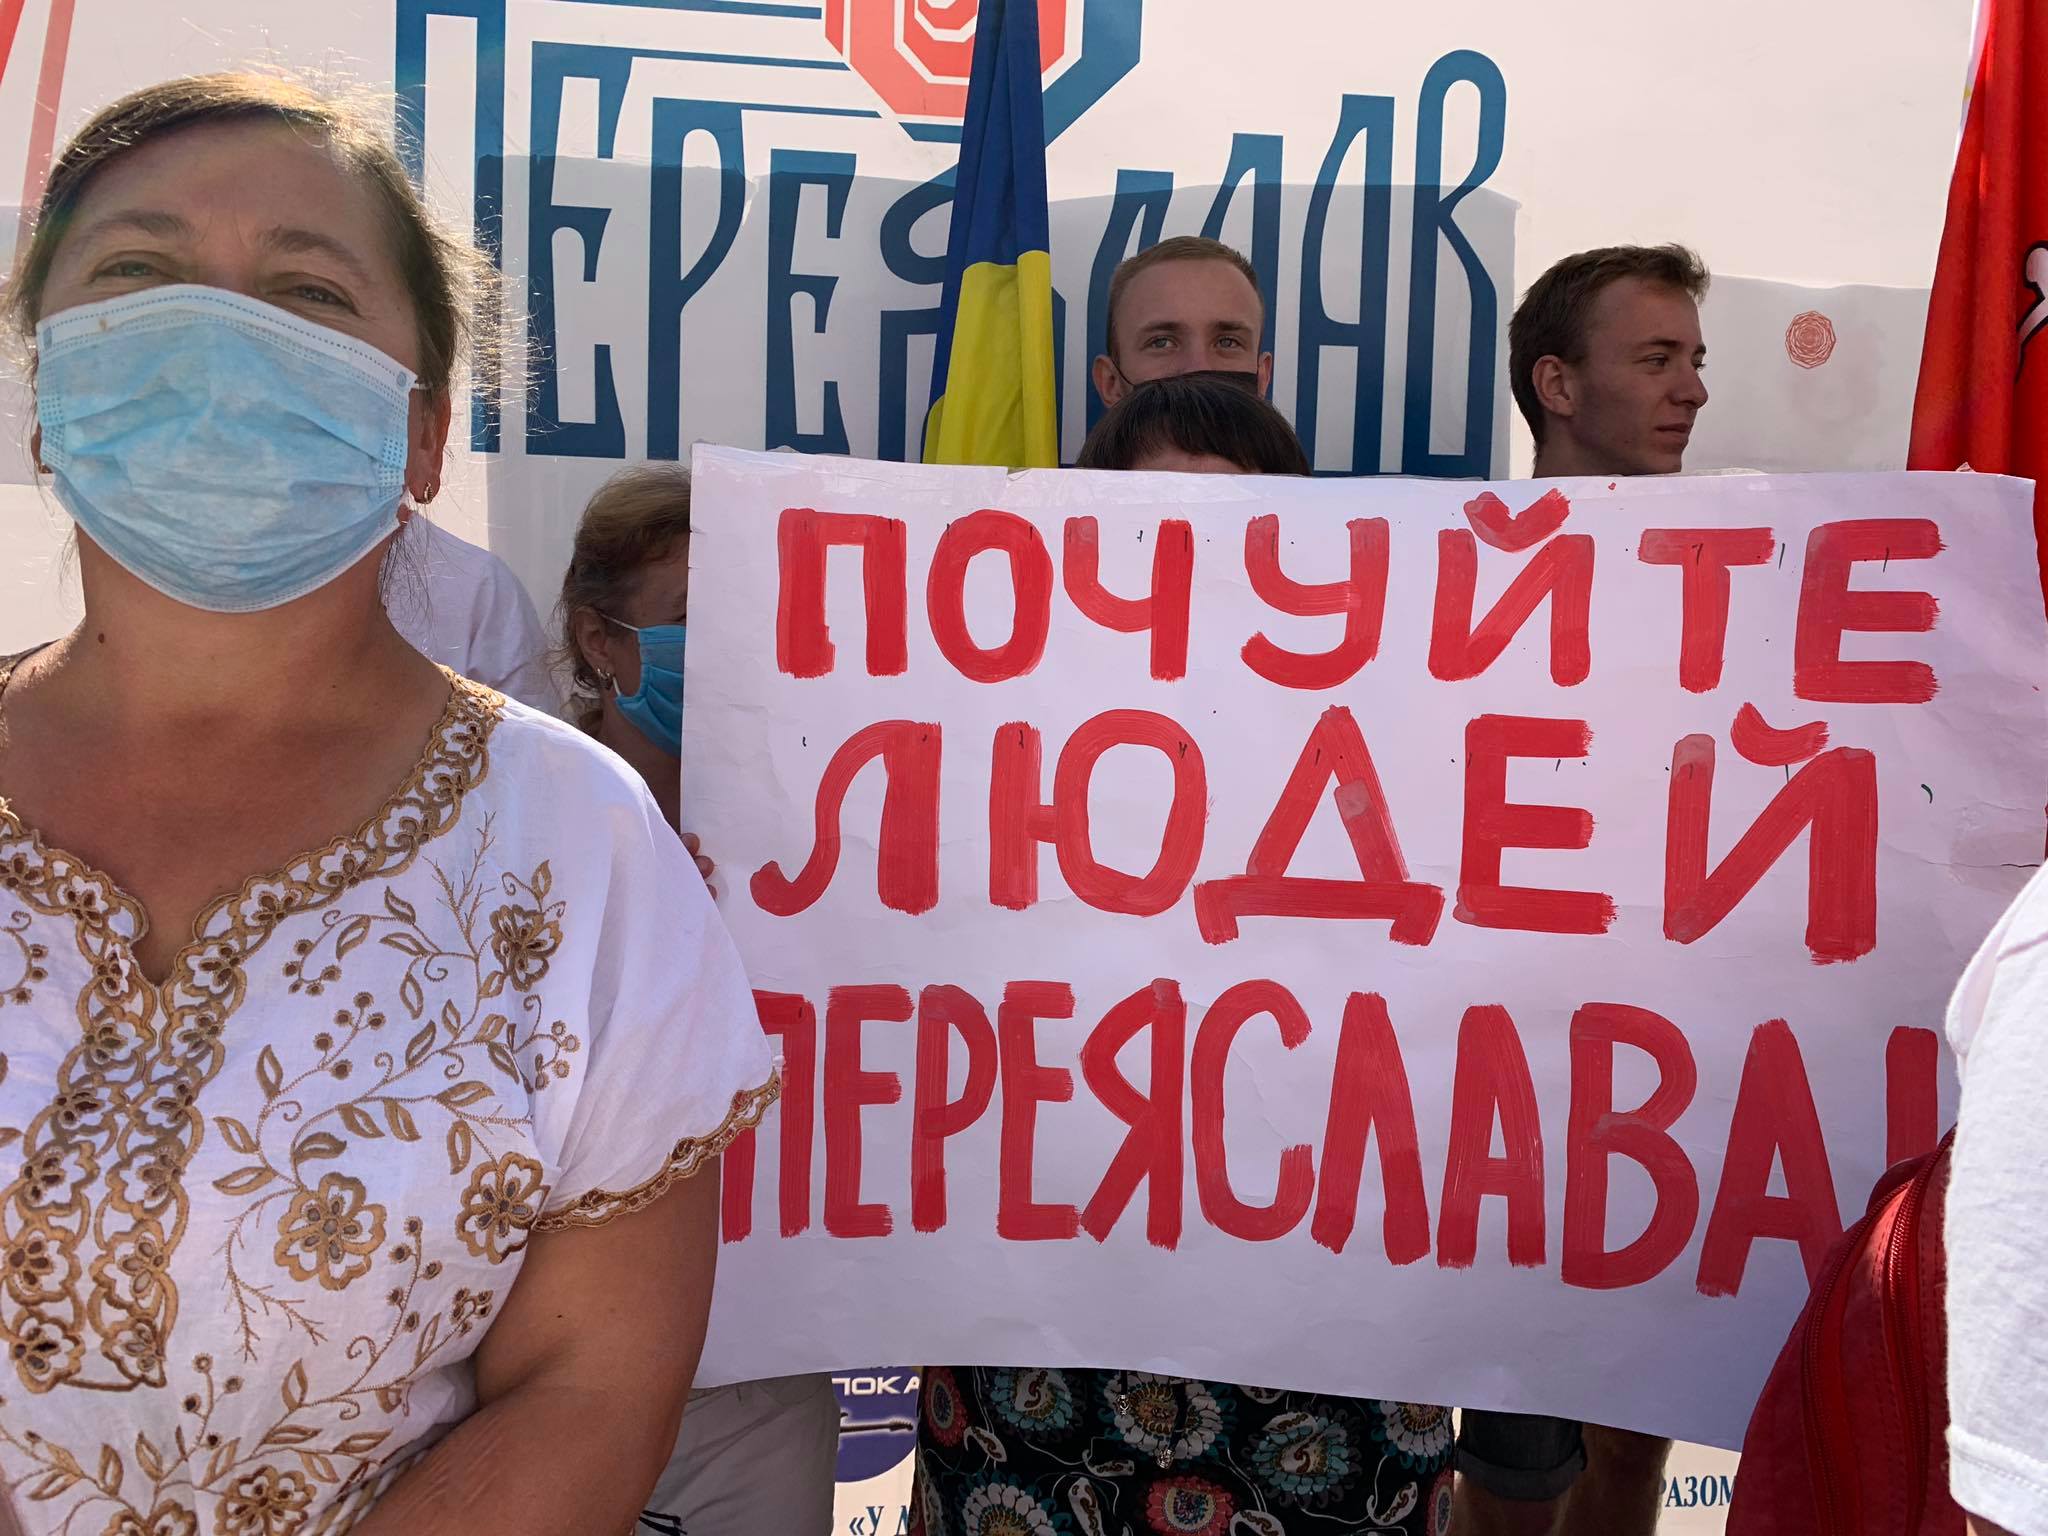 Під ВР протестують проти приєднання Переяславського району до Бориспільського